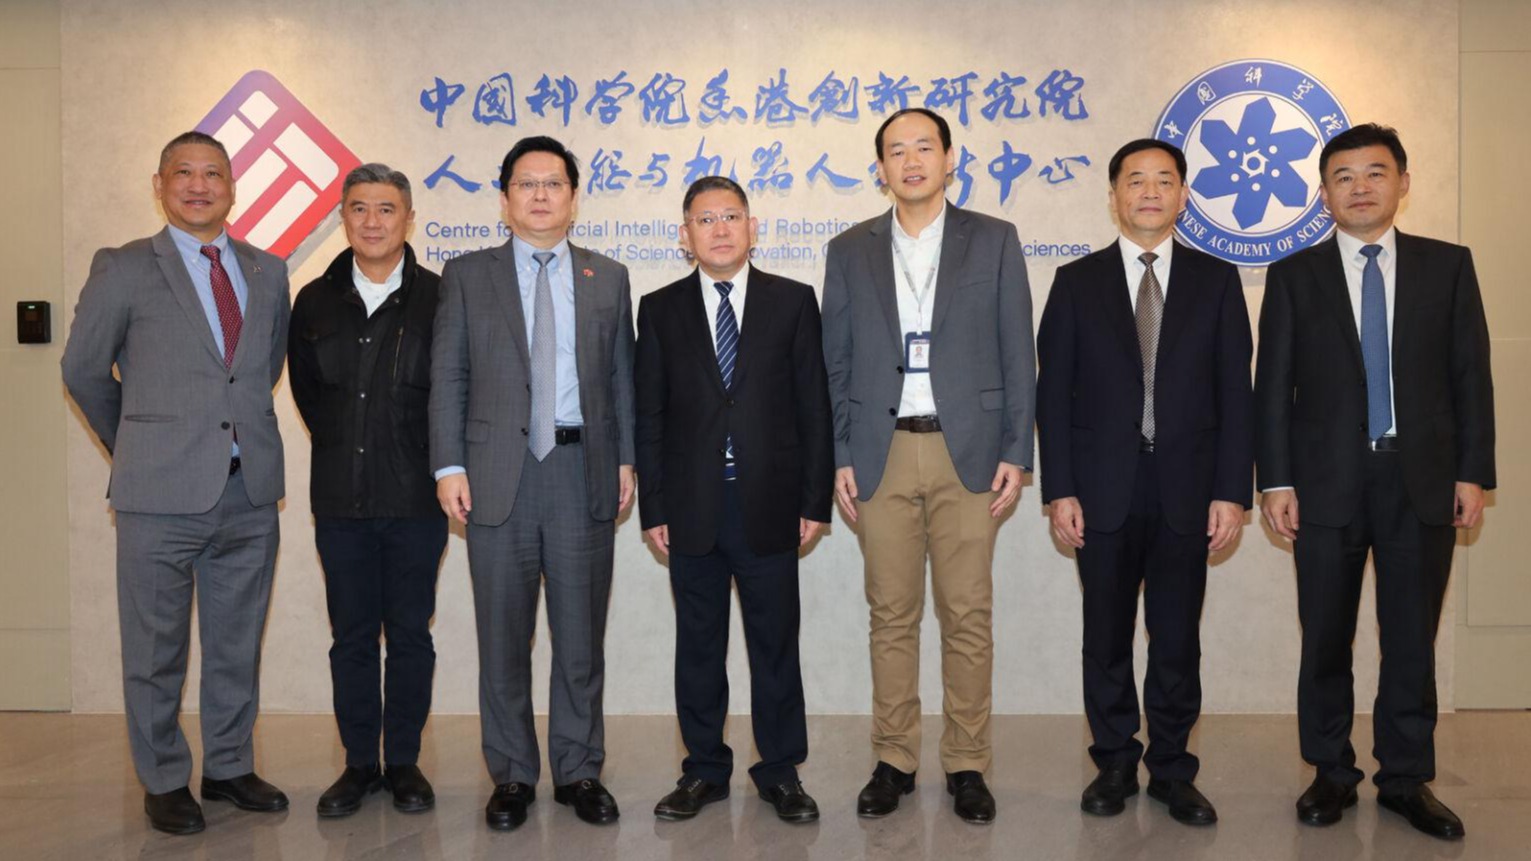 山东省副省长周立伟参观中国科学院香港院AI与机器人中心，旨在加强科技合作